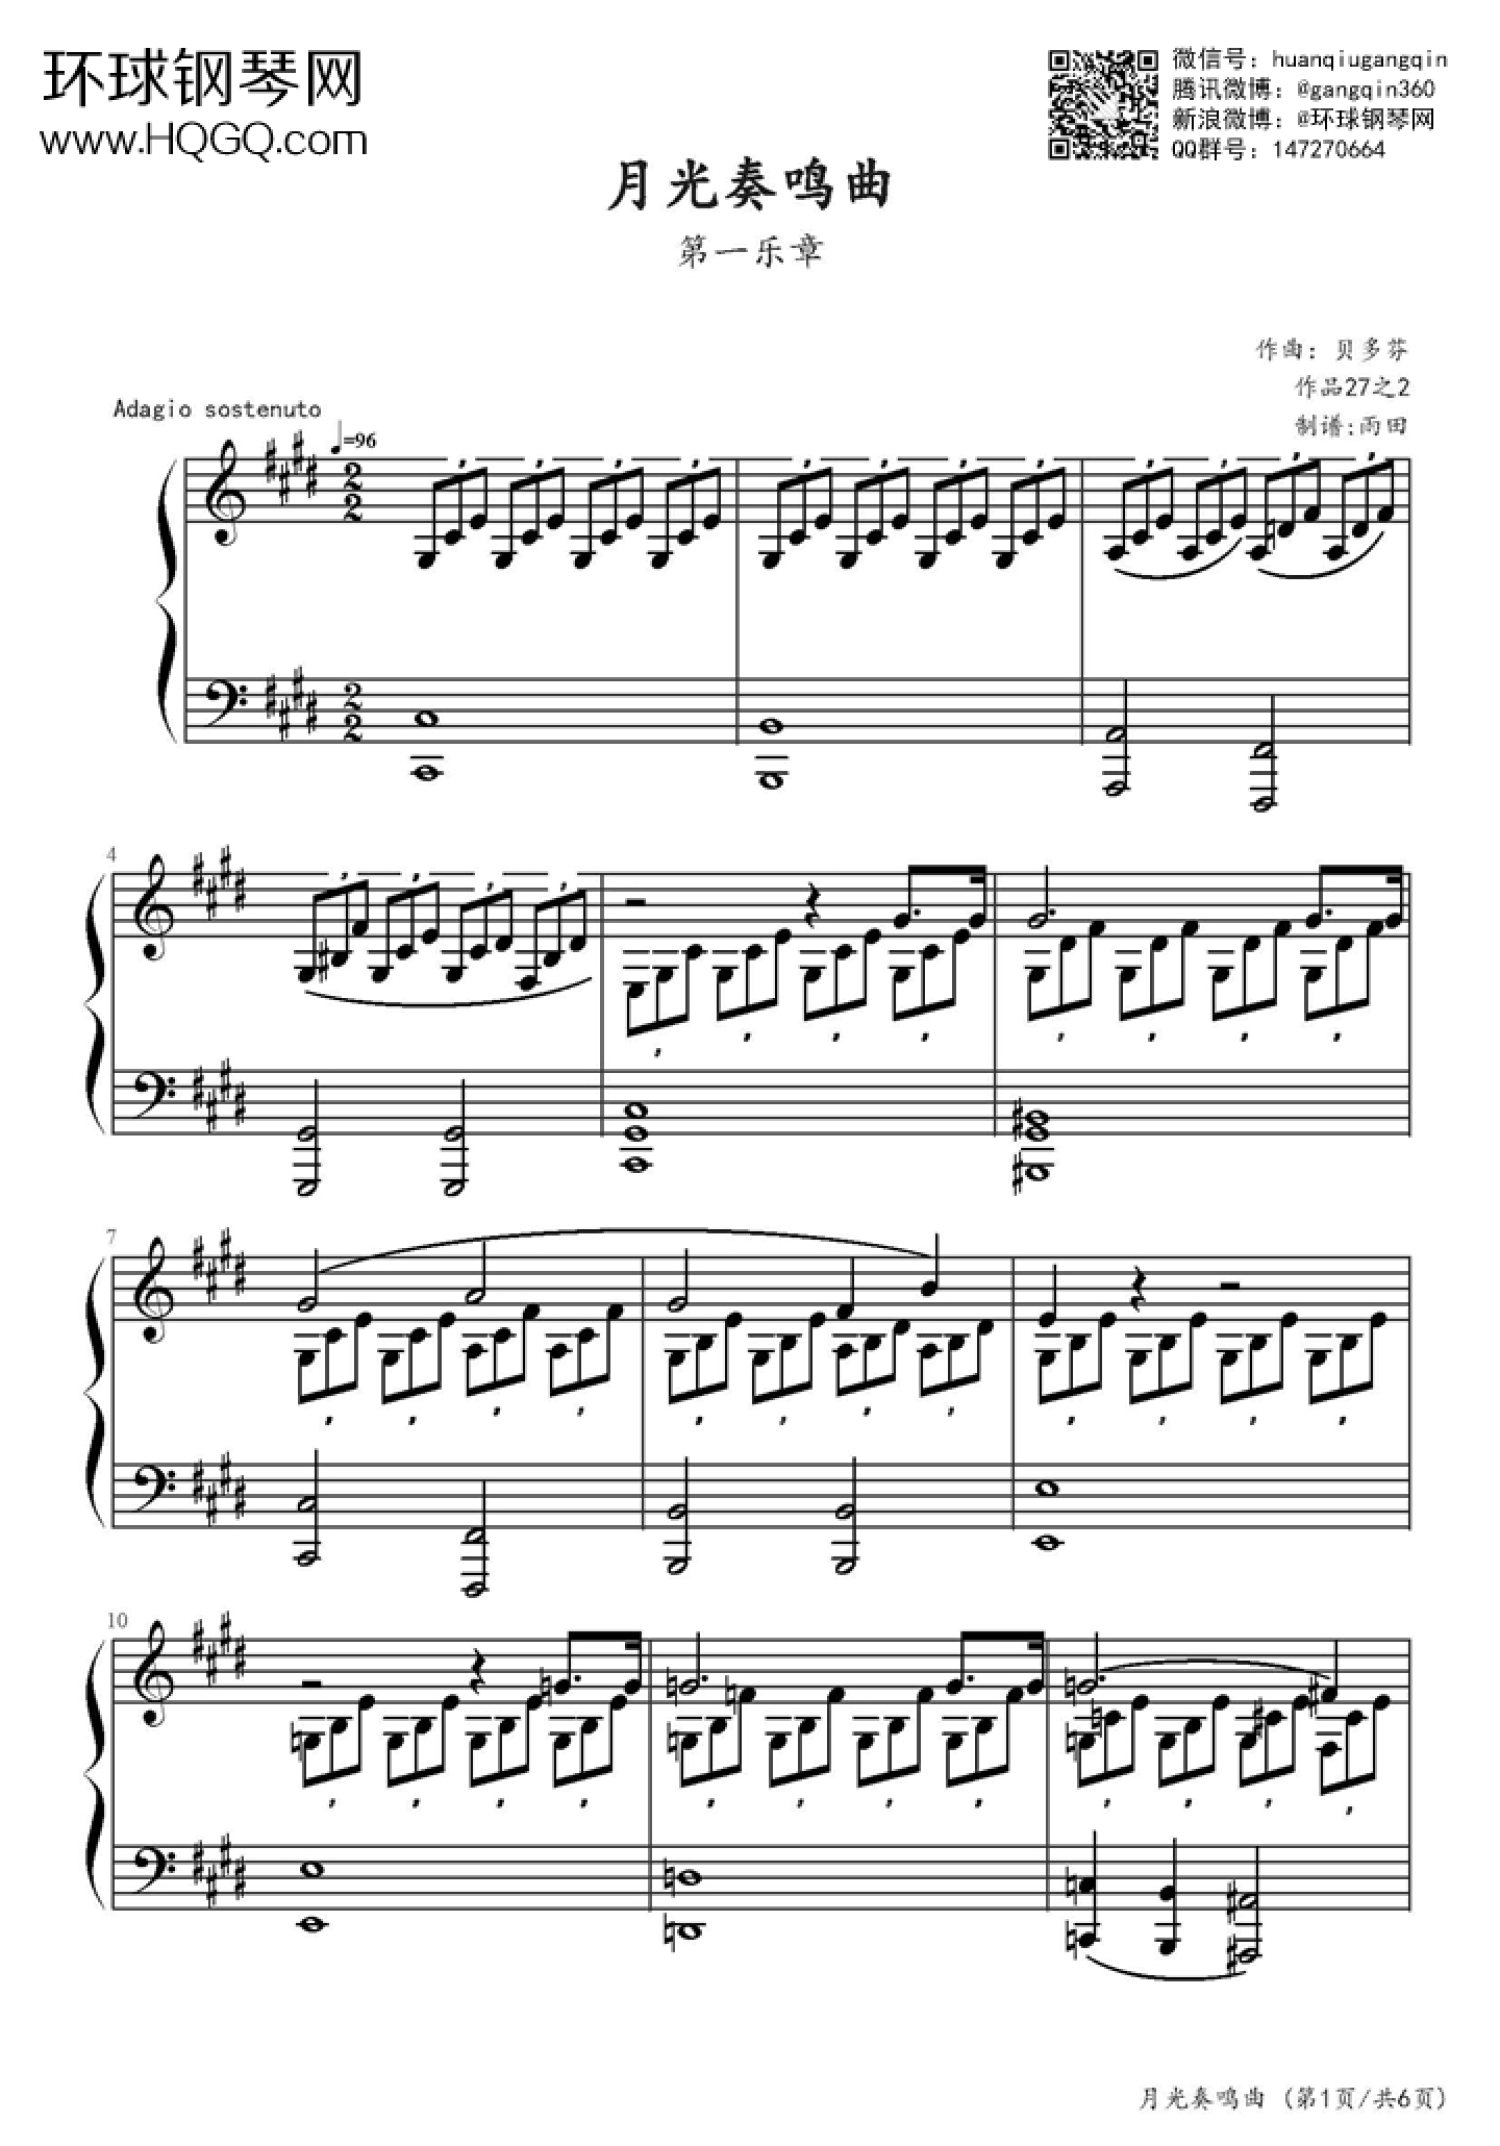 月光奏鸣曲第三乐章双手简谱预览7-钢琴谱文件（五线谱、双手简谱、数字谱、Midi、PDF）免费下载